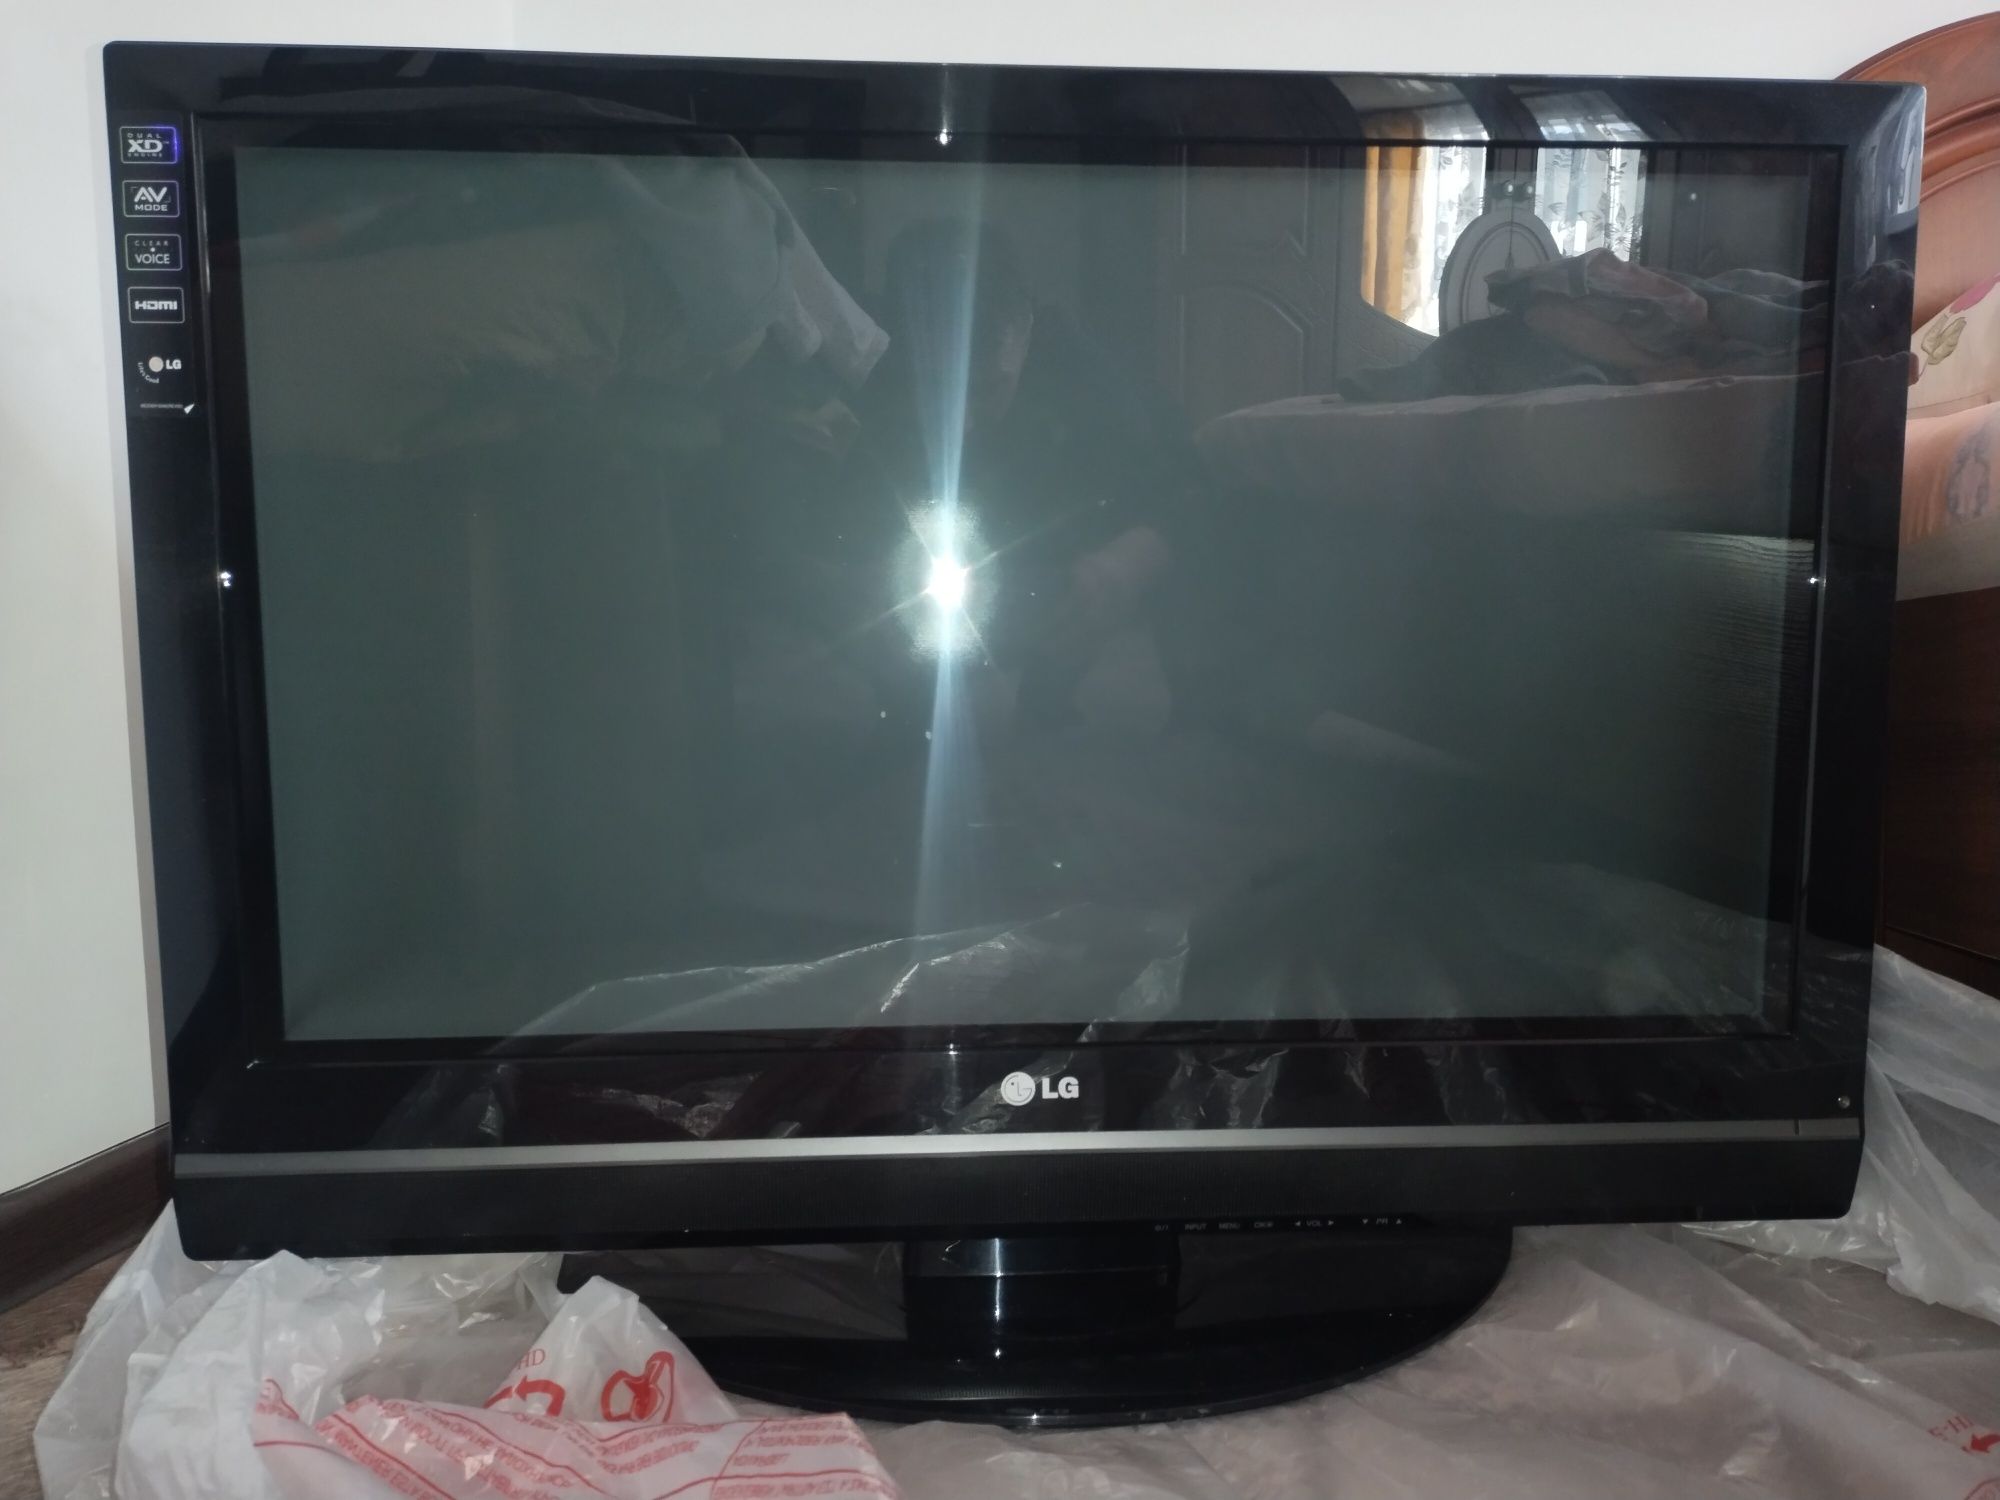 Продам телевизор LG в идеальном состоянии в ремонте не был.